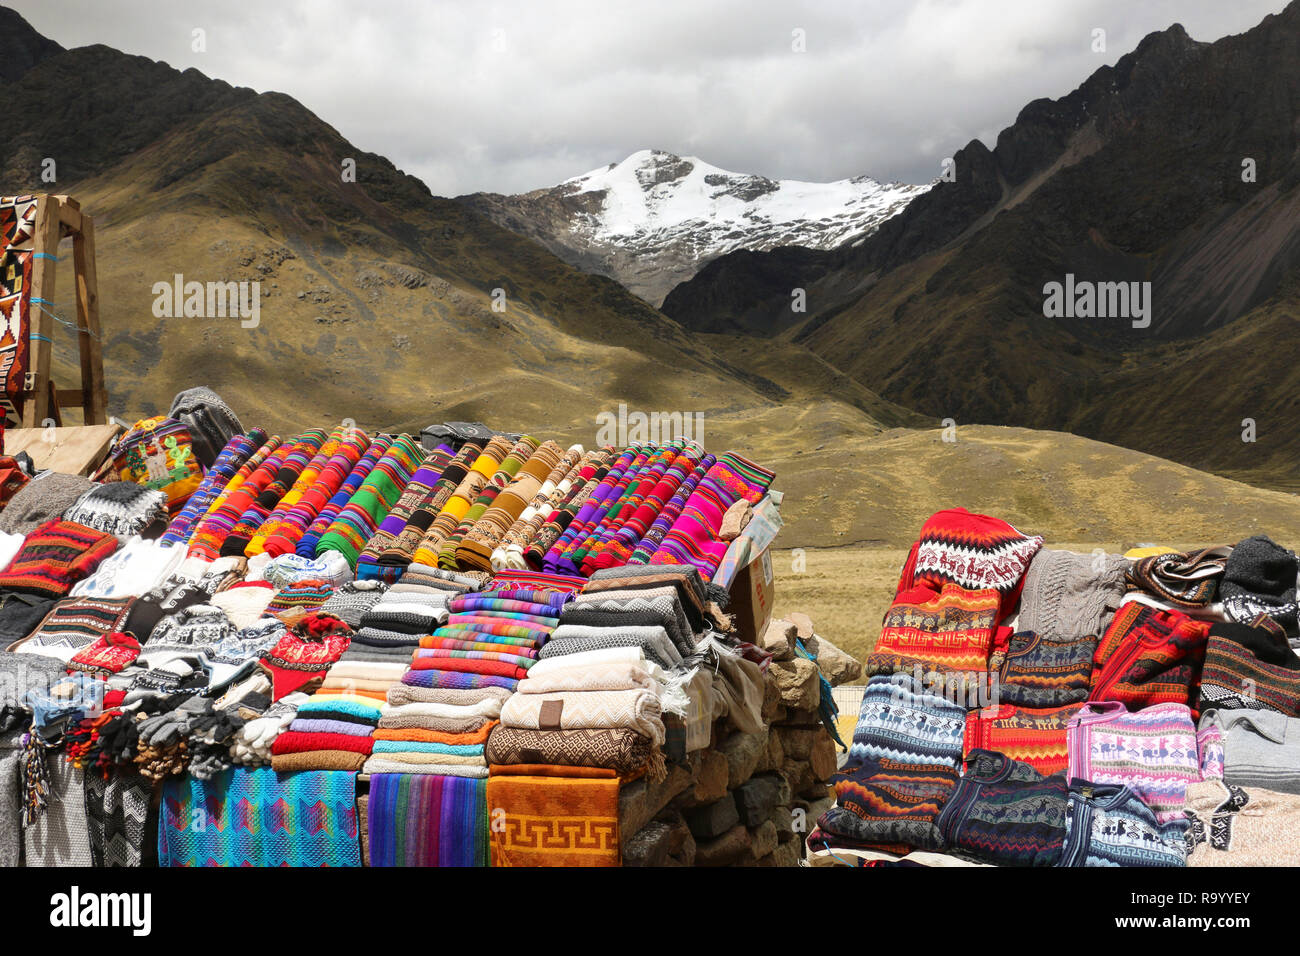 Schals, hüte, im traditionellen Stil in verschiedenen Farben auf dem Markt. Die strasse Cusco-Puno, Peru Stockfoto